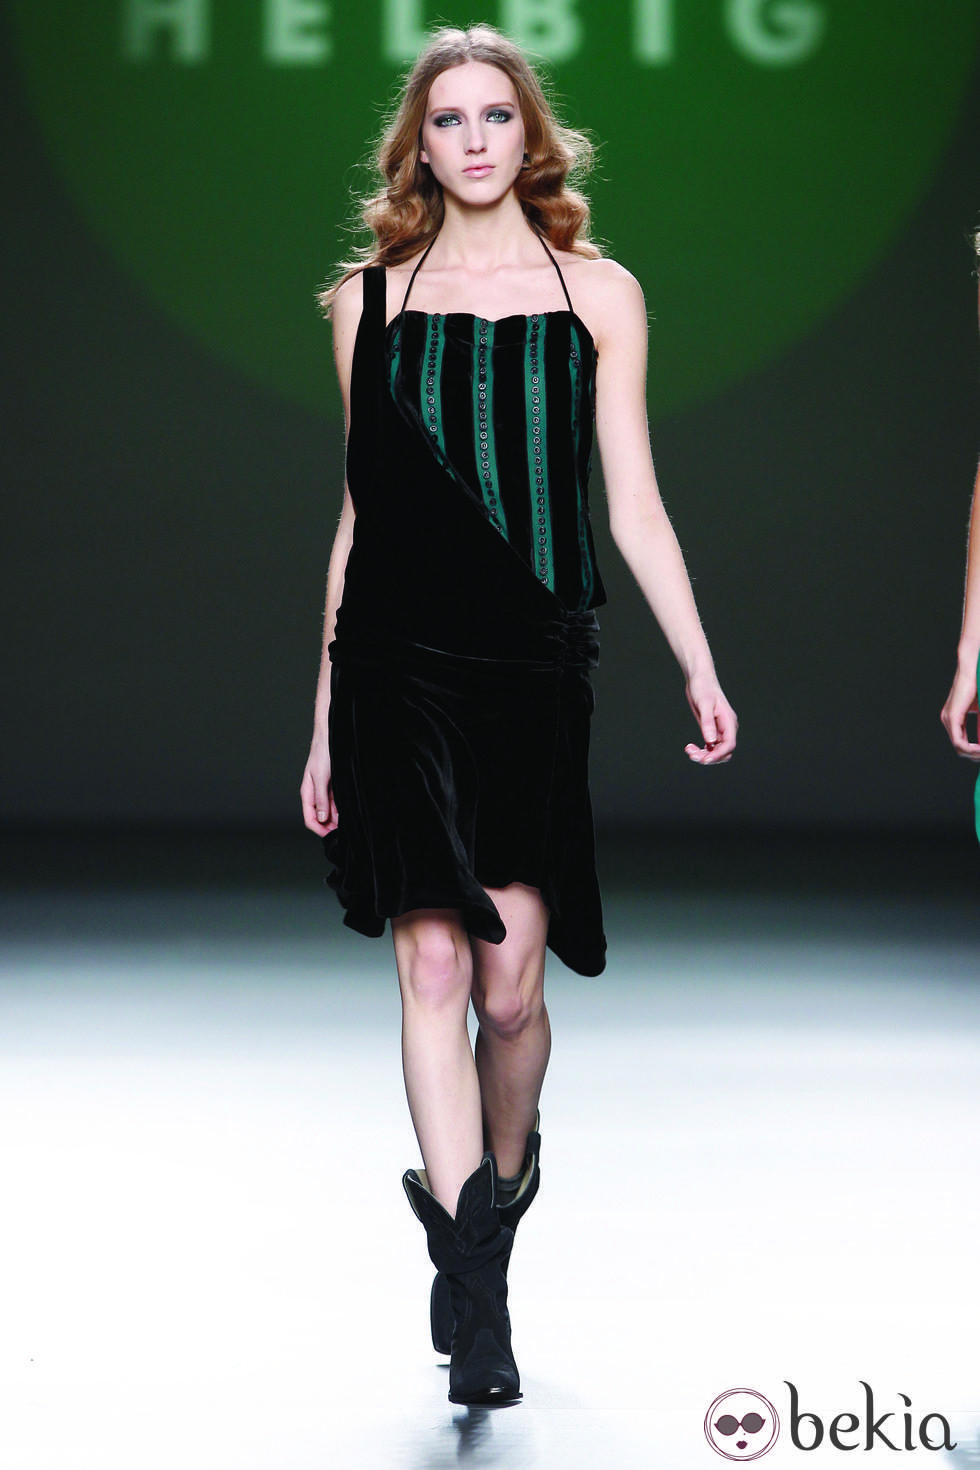 Vestido en terciopelo negro y verde de la colección otoño/invierno 2012/2013 de Teresa Helbig